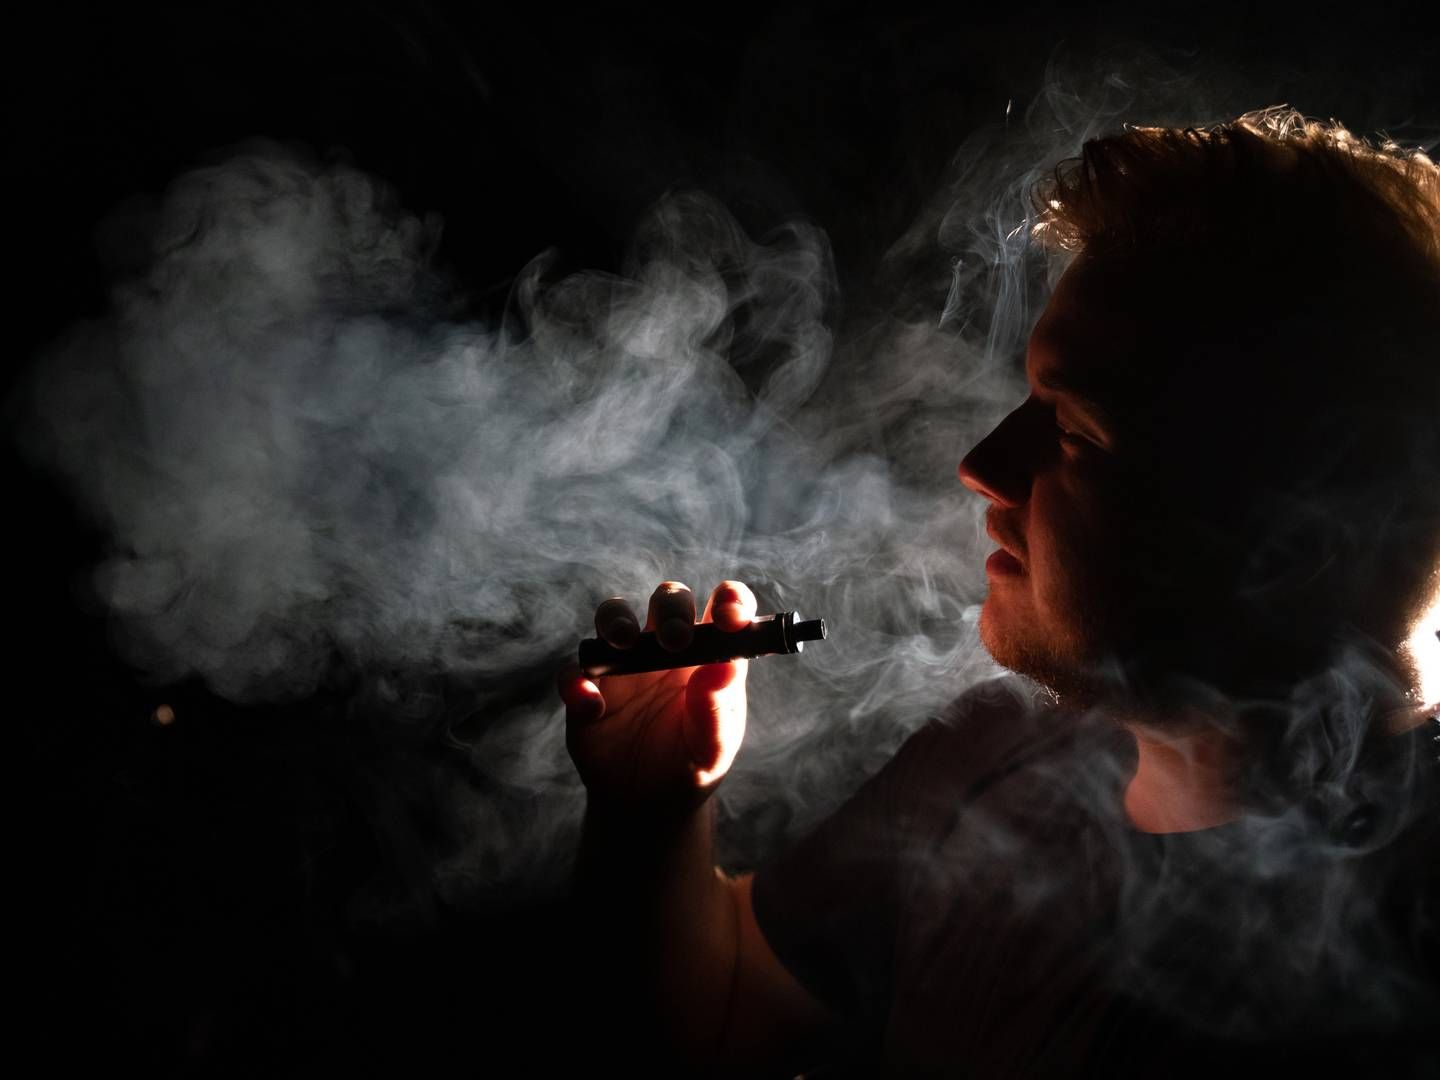 Fra 1. april er det ikke længere lovligt at sælge e-cigaretter med smag. Det betyder et noget mere begrænset sortiment for Gejser. | Foto: Andreas Merrald